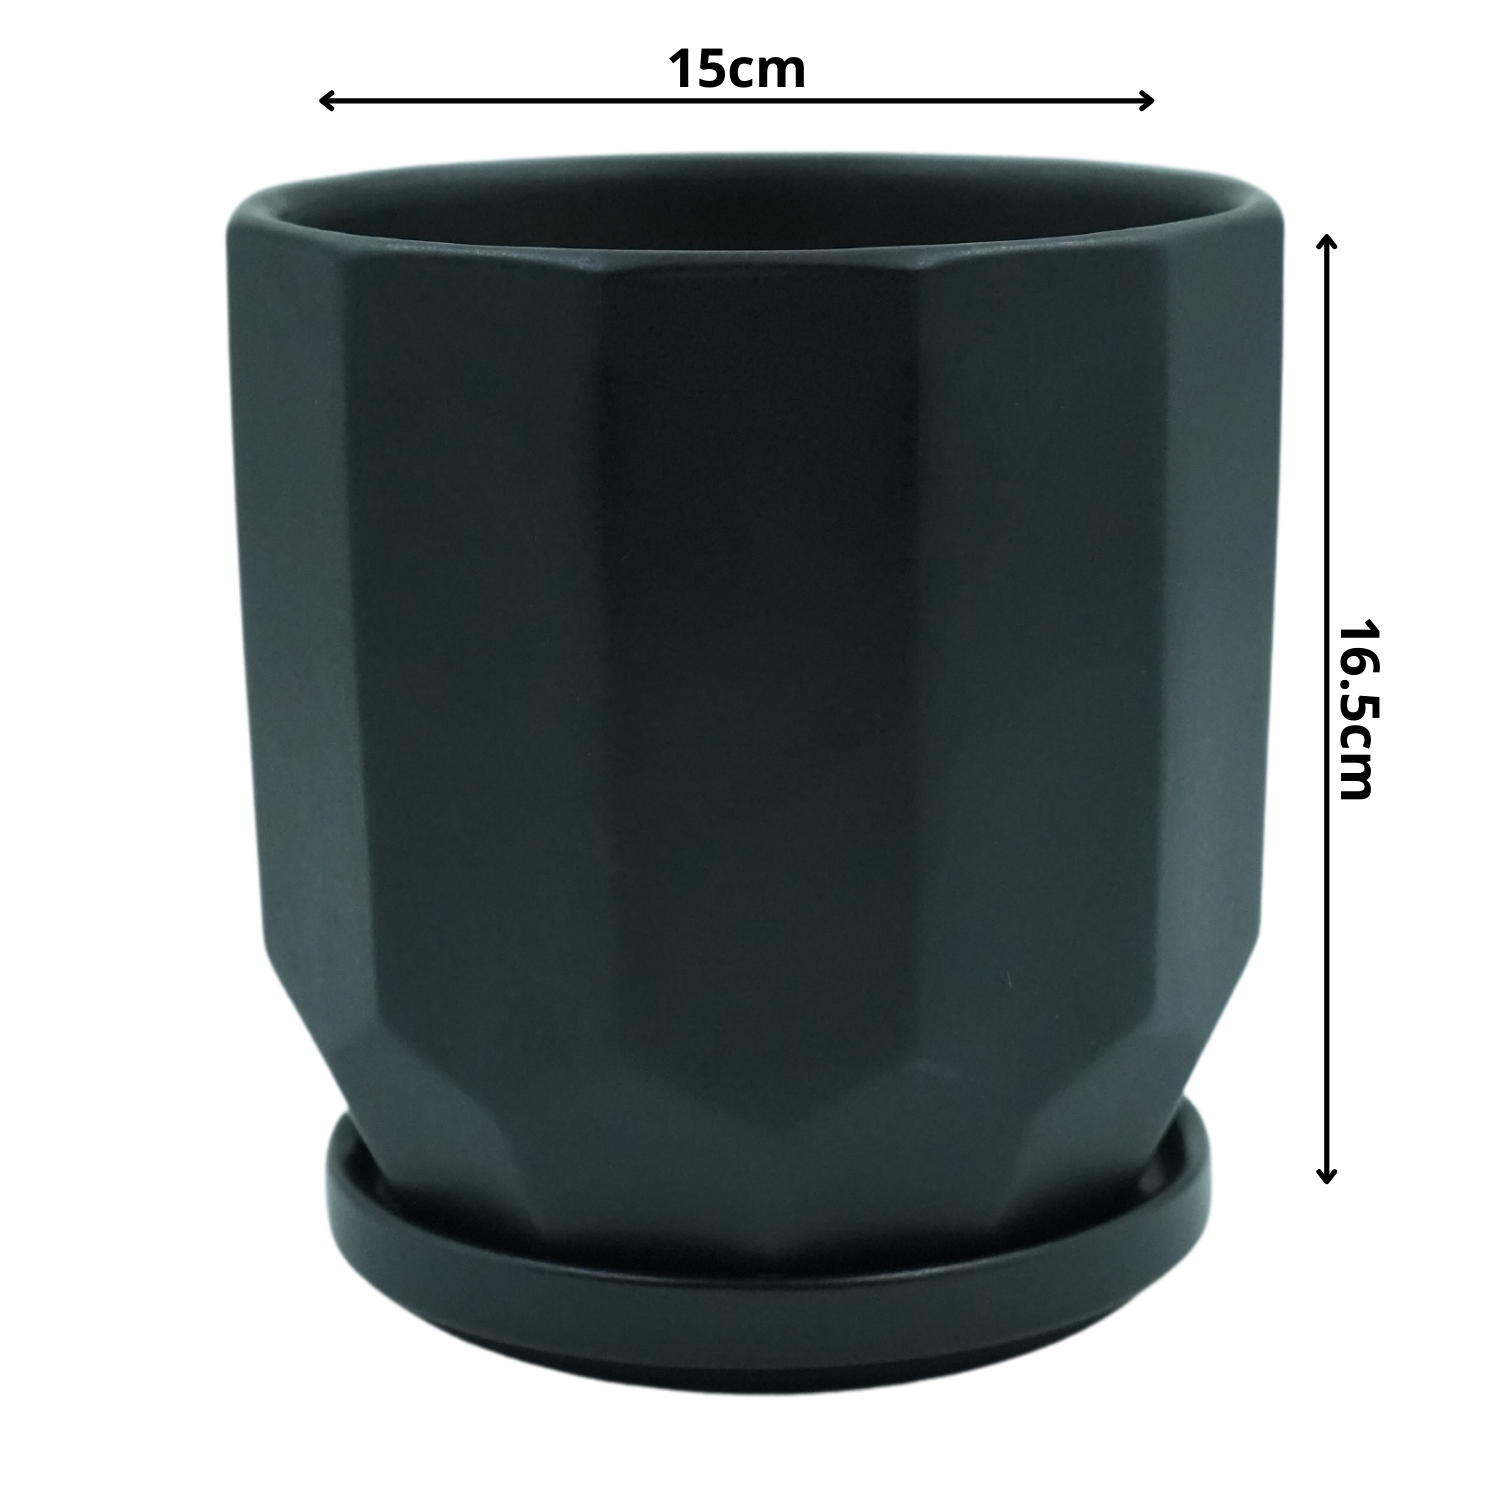 Designer Ceramic Pot (Black, Matt Finish,Large) for Home & Indoor Plant Decor